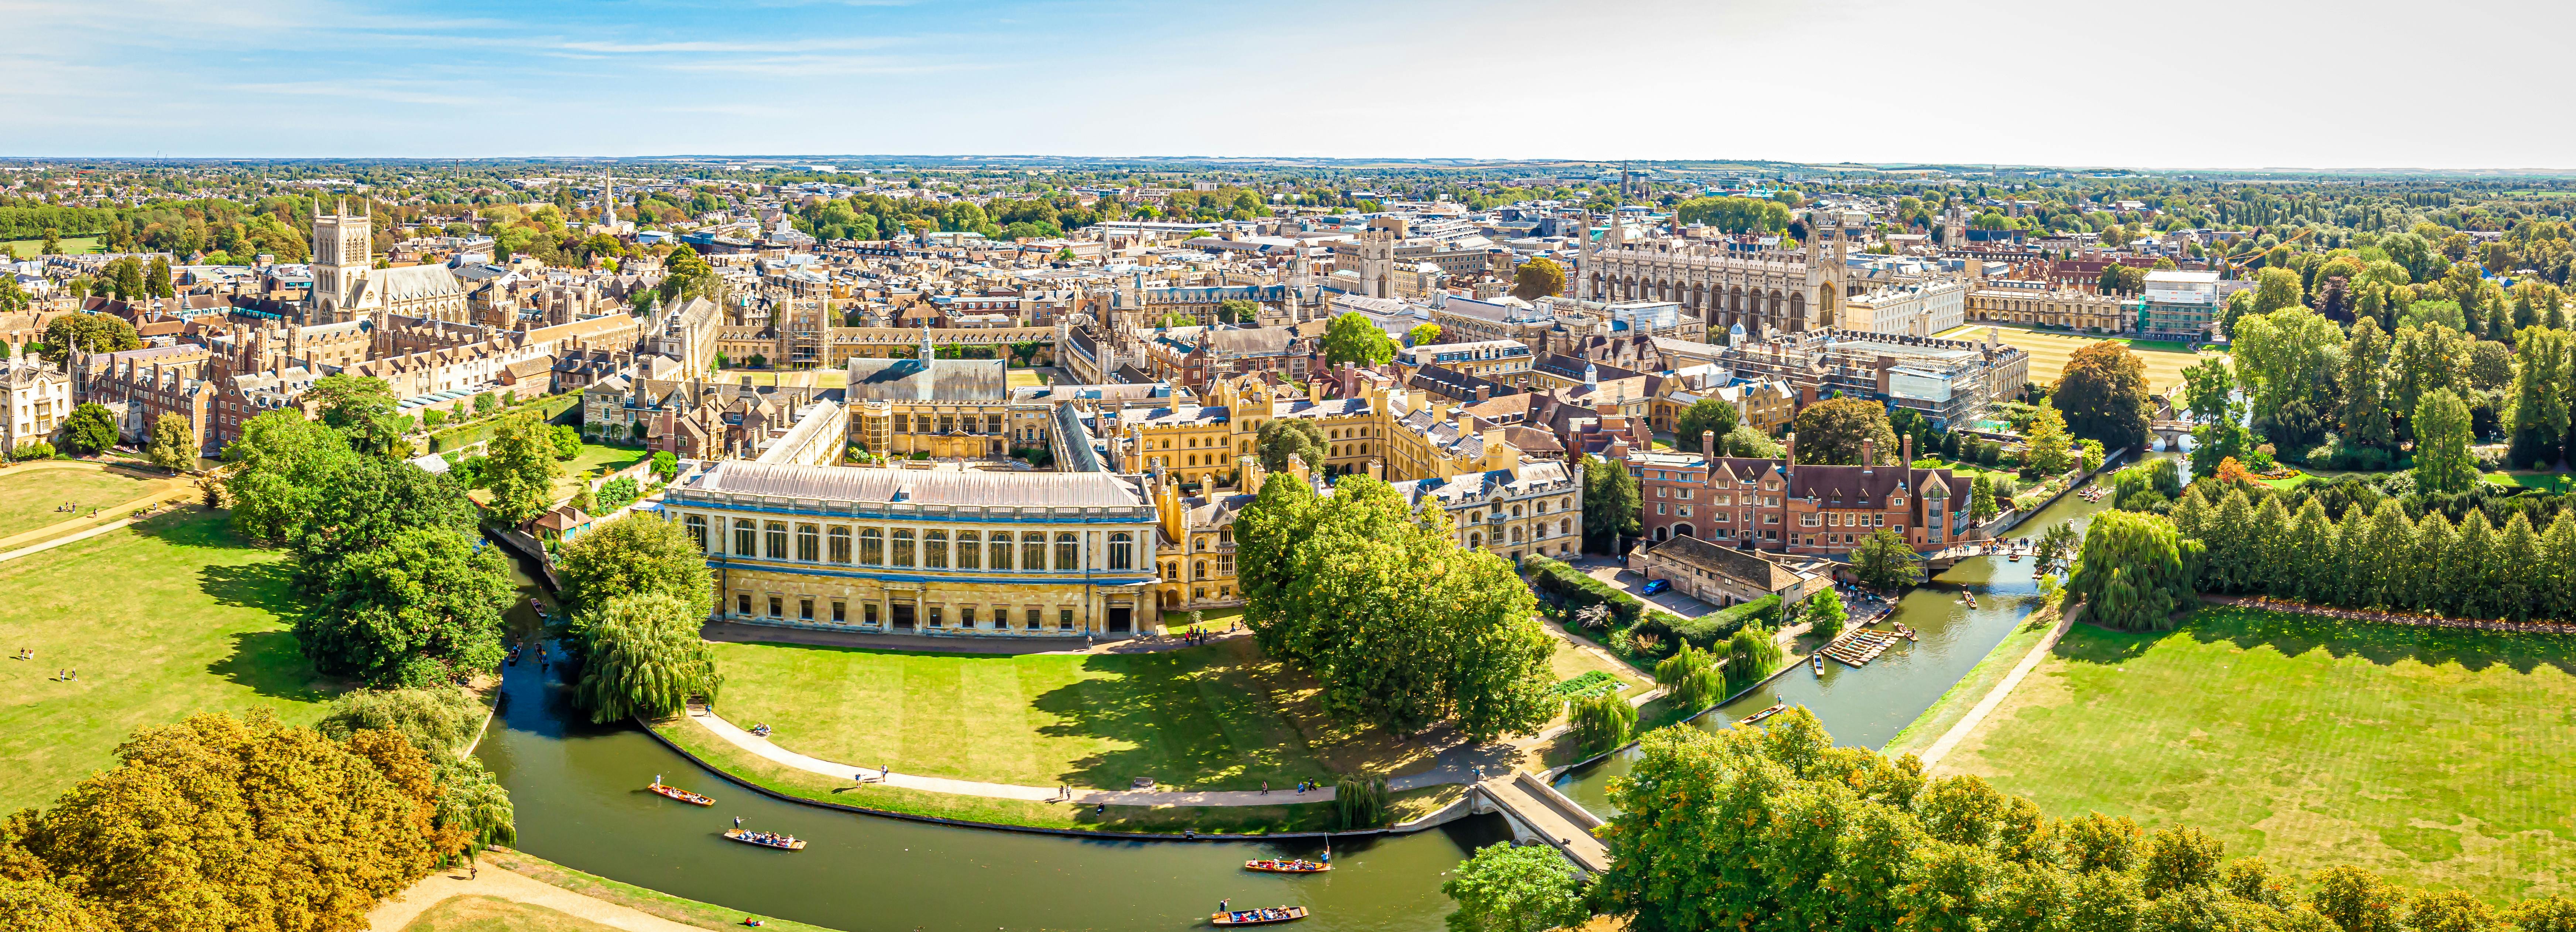 Uniwersytet Cambridge i wycieczka piesza po mieście